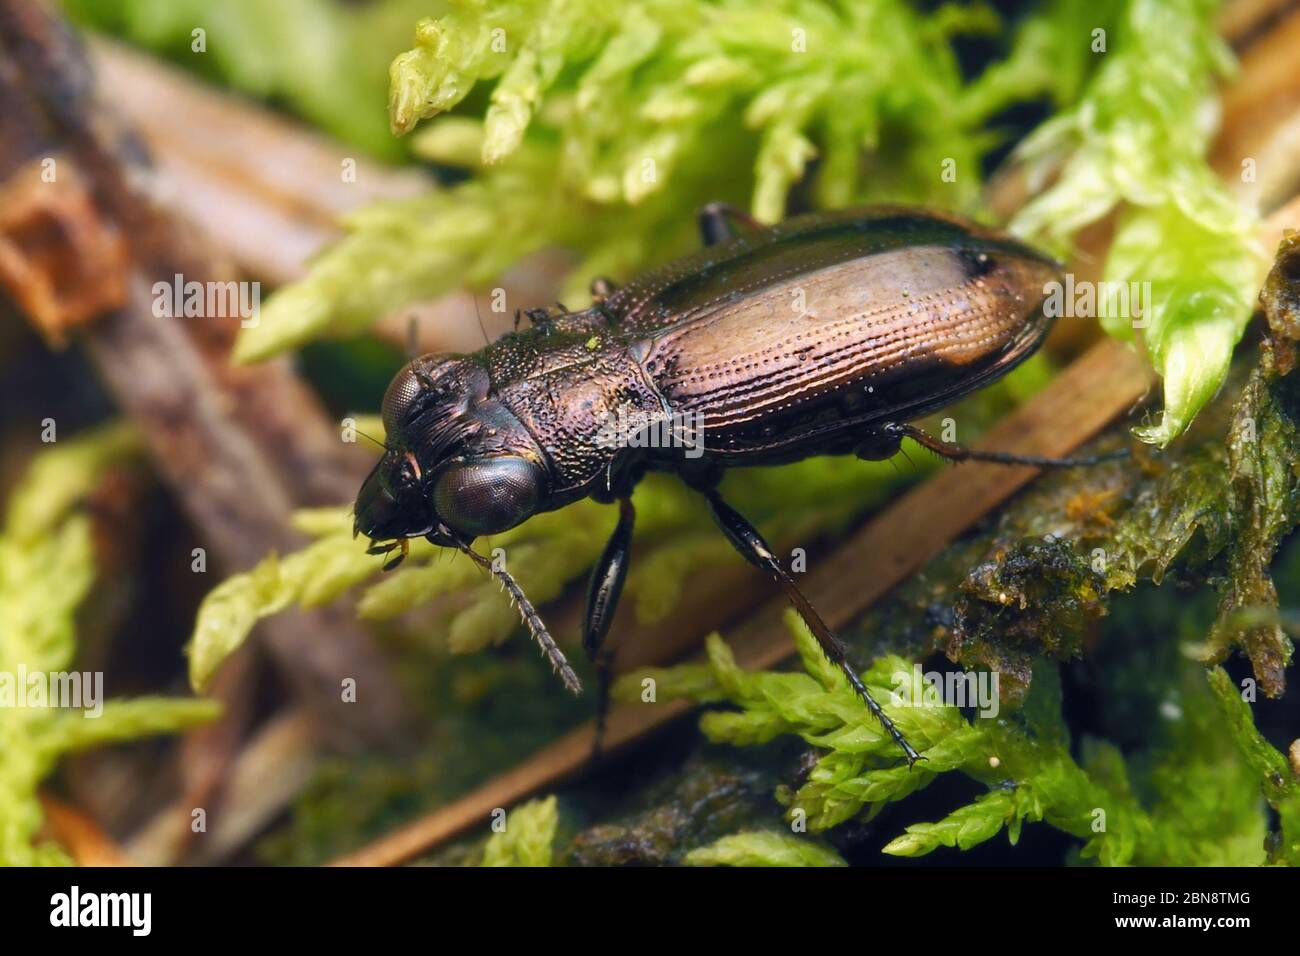 Notiophilus biputtatus escarabajo de tierra arrastrándose a lo largo del suelo del bosque. Tipperary, Irlanda Foto de stock